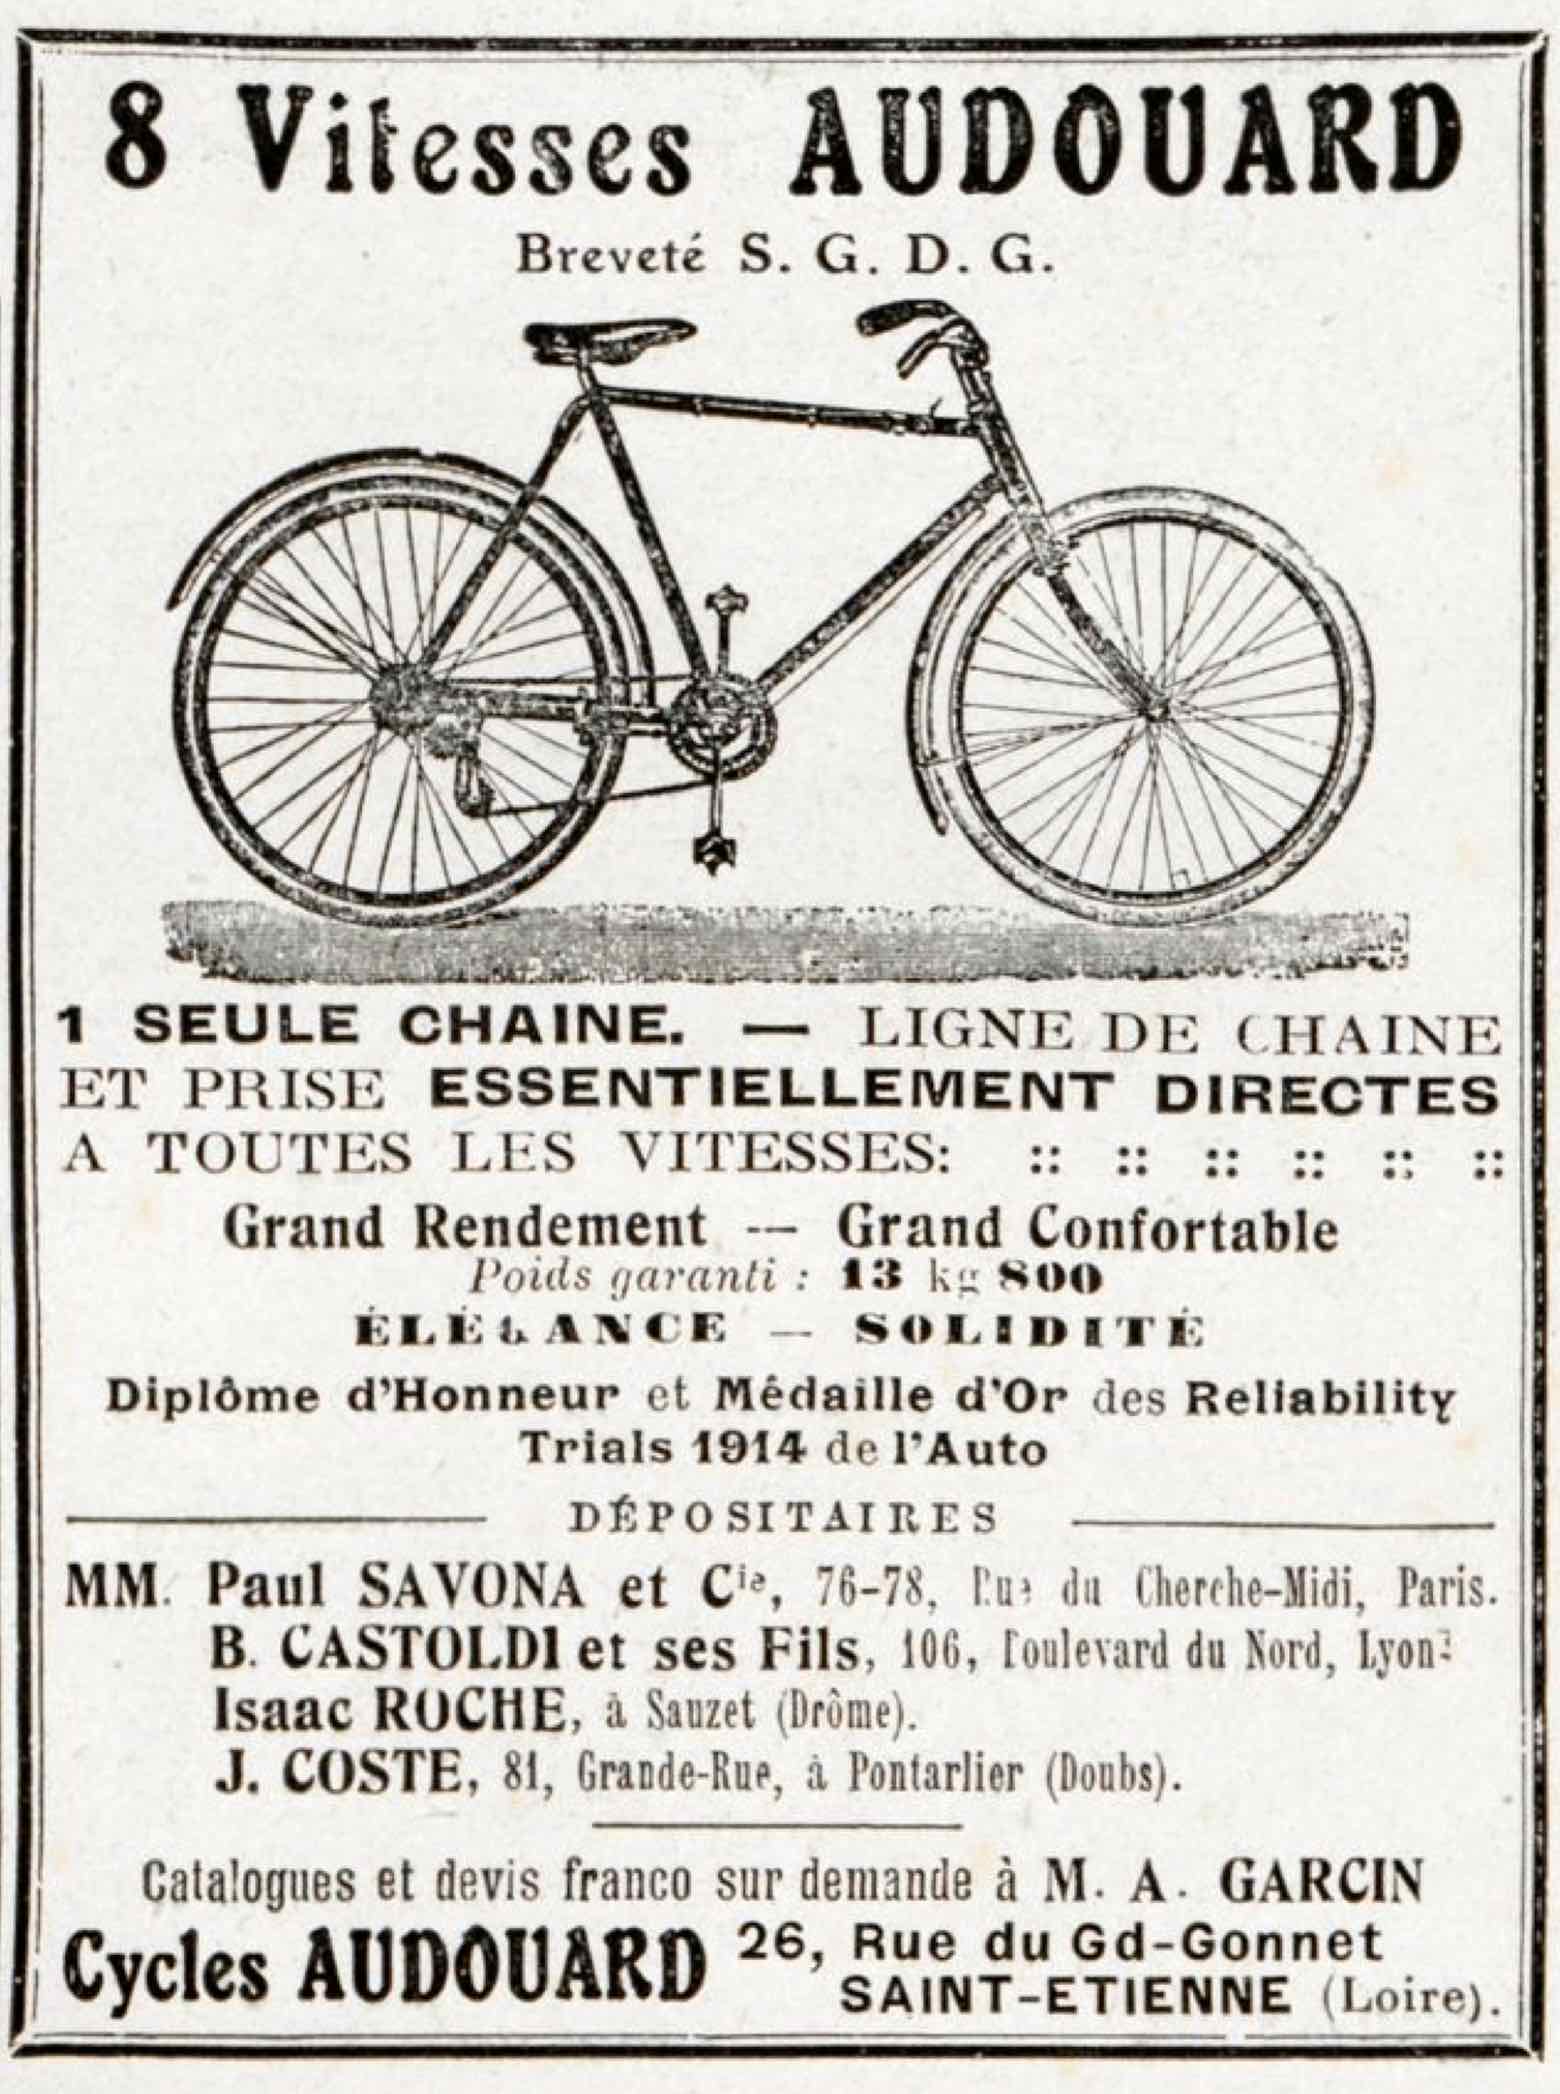 T.C.F. Revue Mensuelle April 1914 - Audouard advert main image